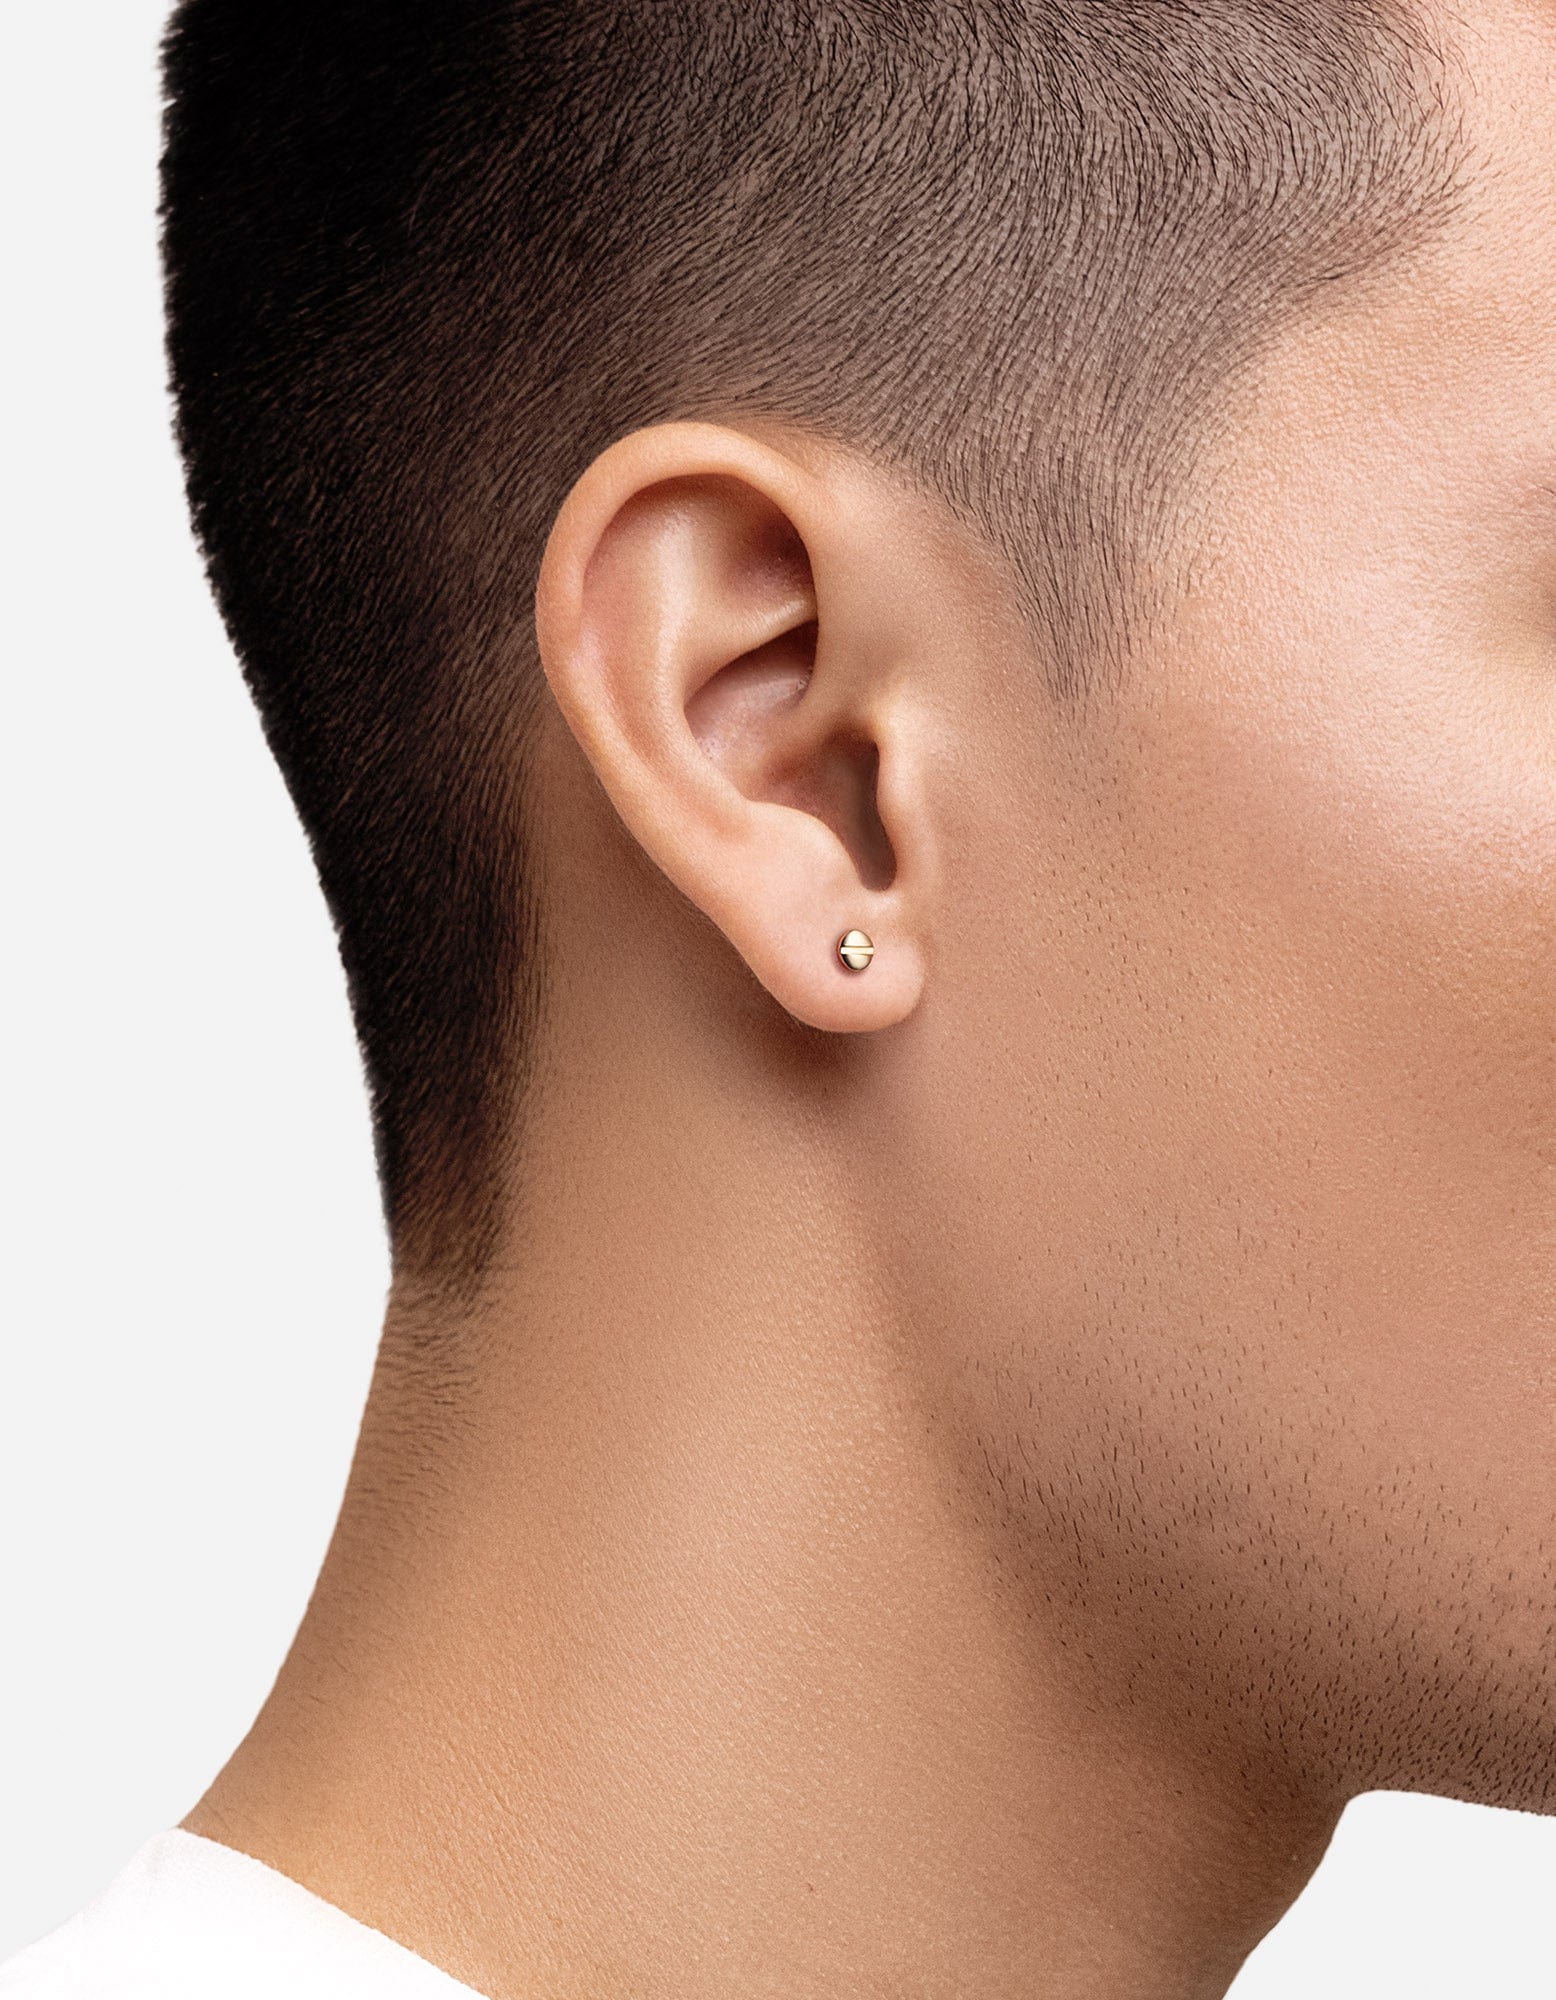 18k Gold Plated Male Earring Skull – Code Earrings For Man